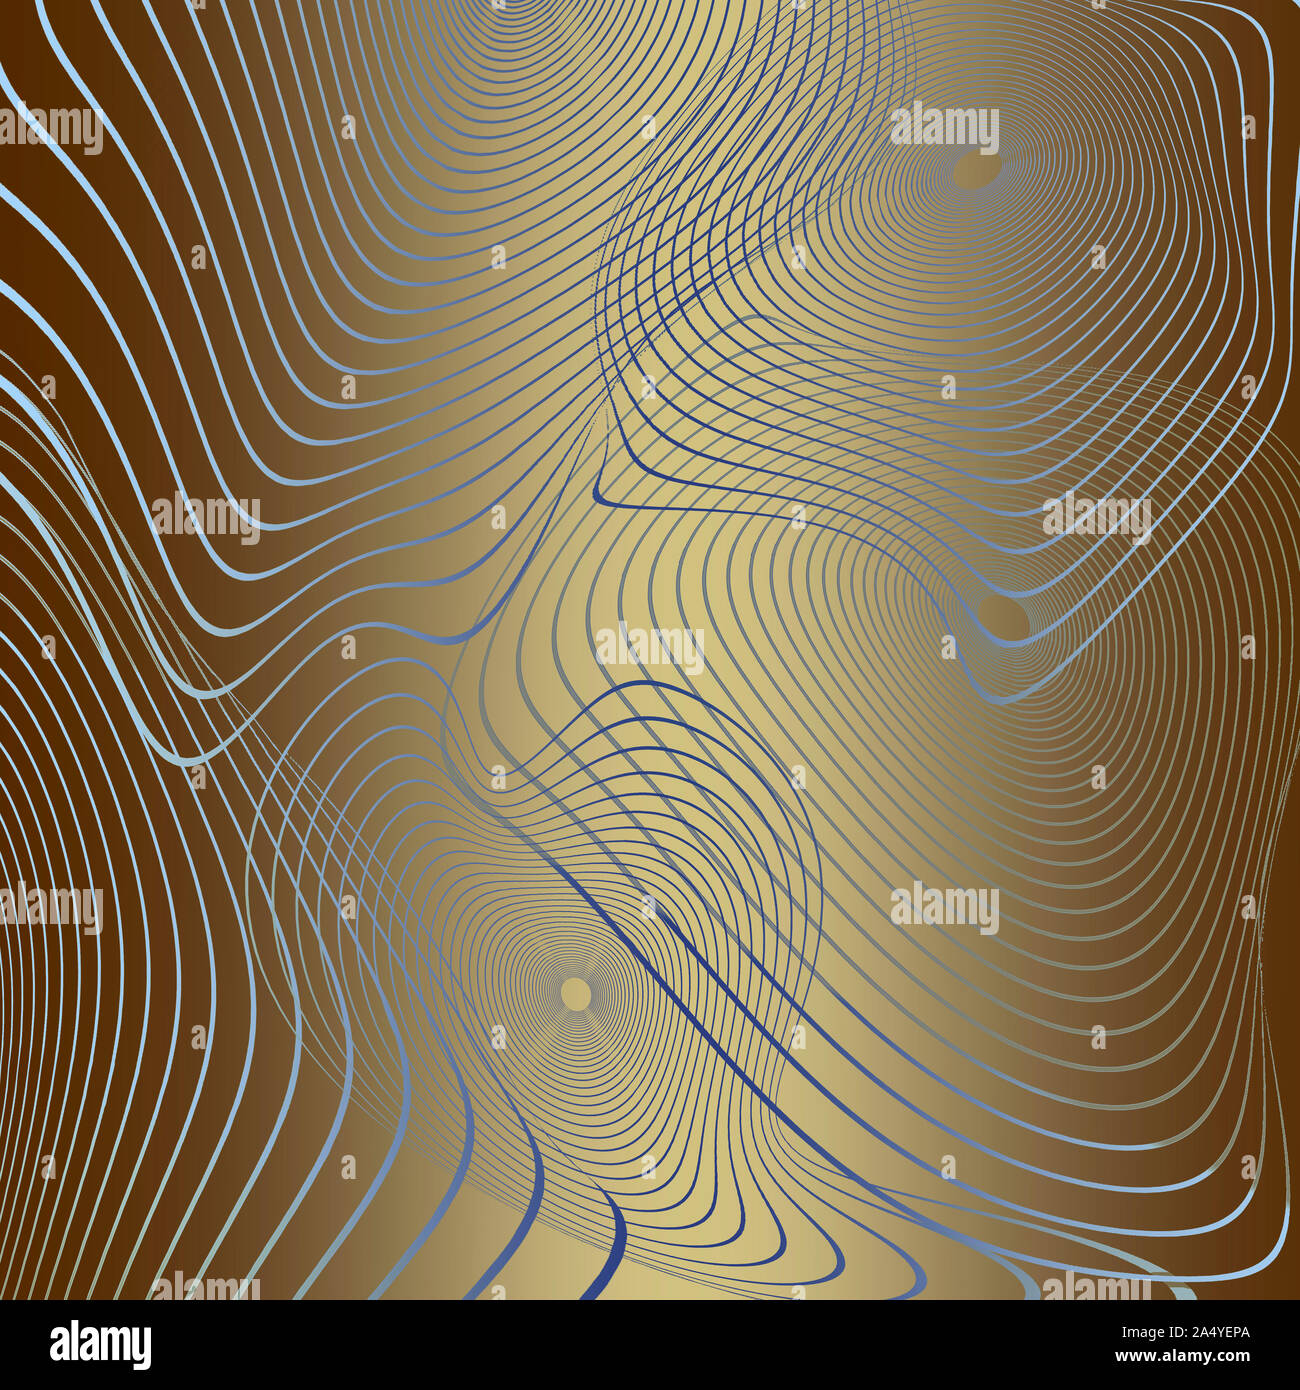 Les cercles concentriques de contour rayé déformée à partir de lignes ondulées sur golden background - arrière-plan généré numérique abstraite, raster illustratio Banque D'Images